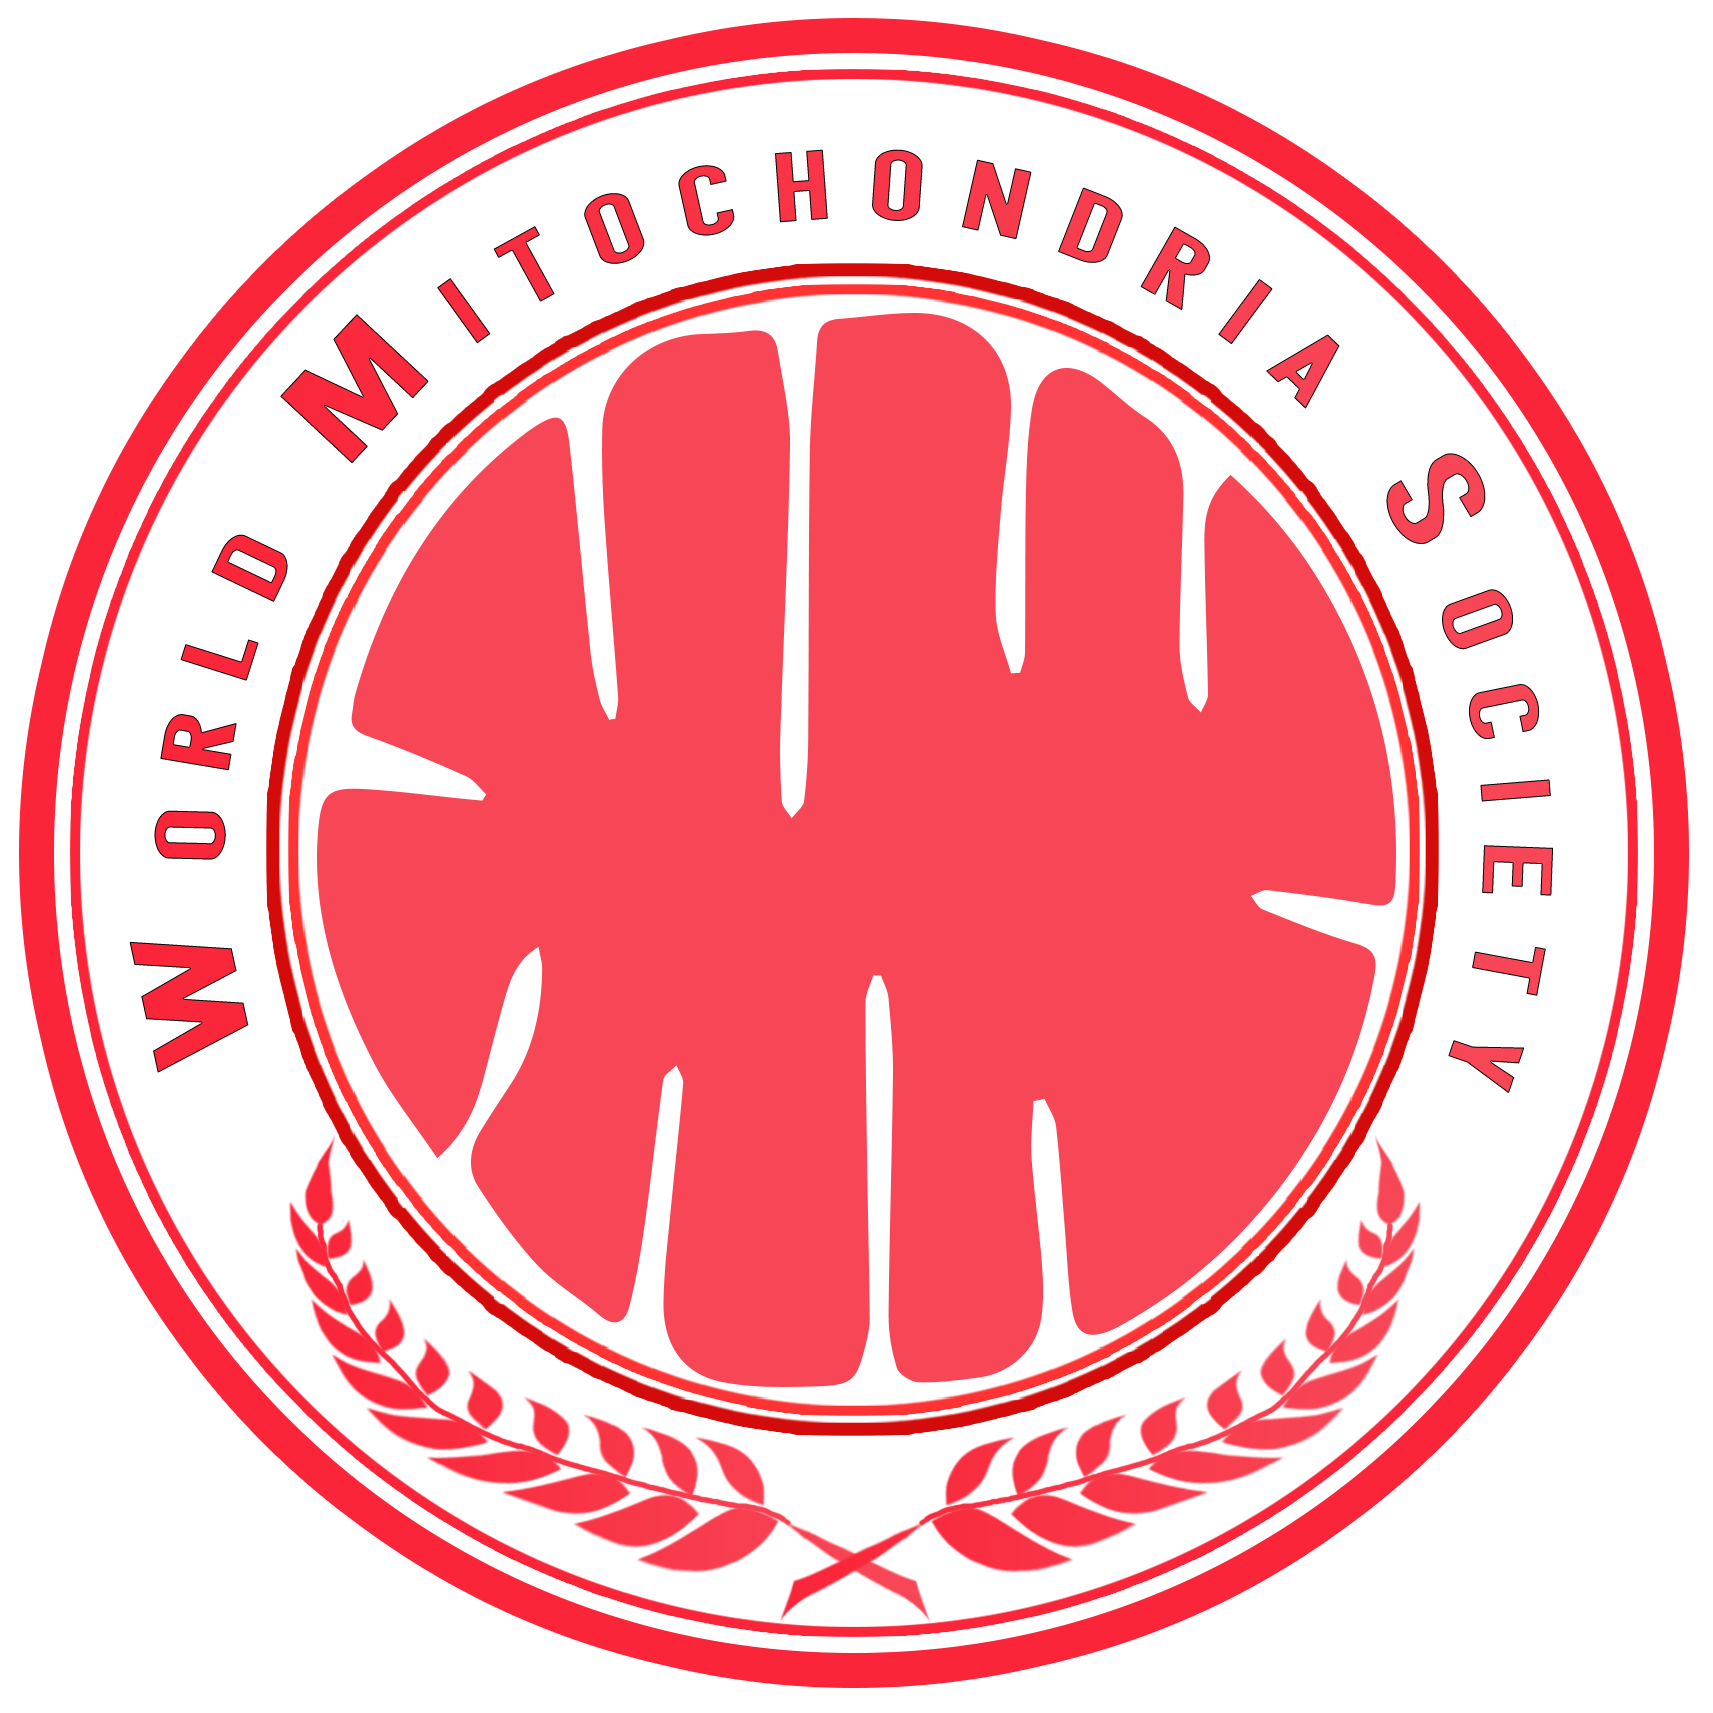 Mitochondria-logo-original